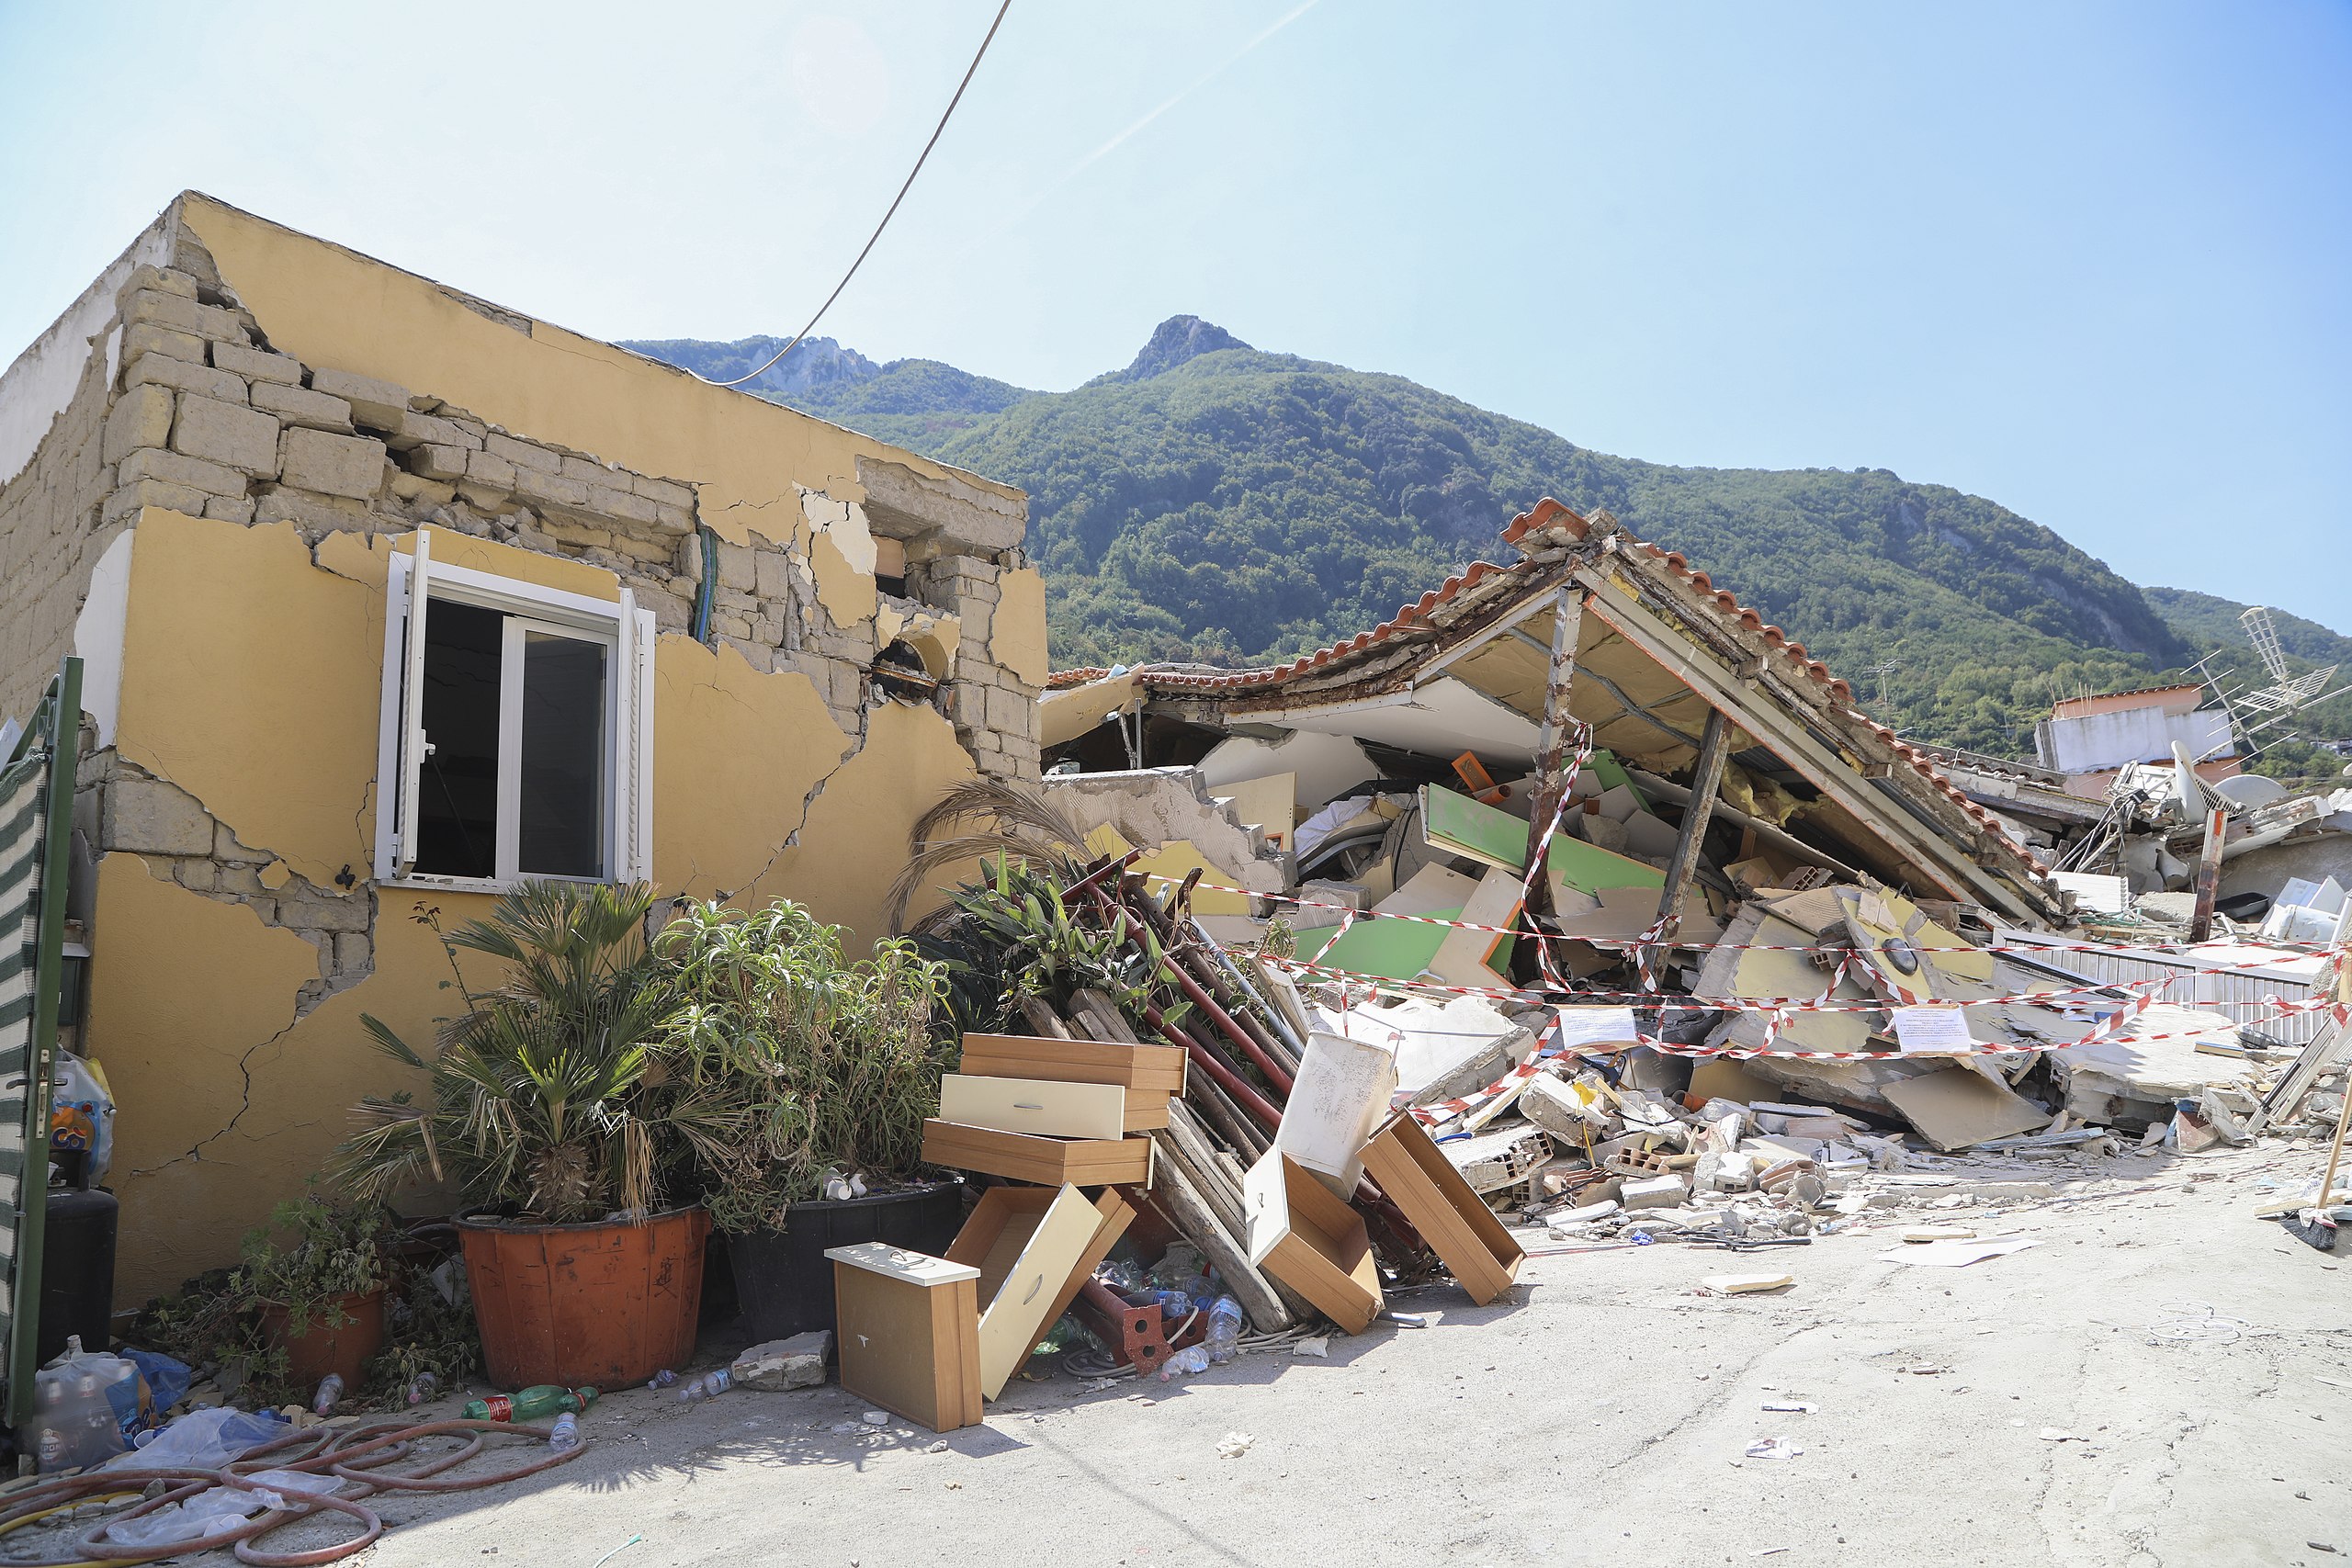 De nombreux séismes secouent chaque année le territoire européen. Certains peuvent être violents et entraîner d'importants dégâts comme ici lors du séisme de 2017 qui a frappé l'île d'Ischia, en Italie. © Dipartimento Protezione Civile from Italia, Wikimedia Commons, CC by 2.0 